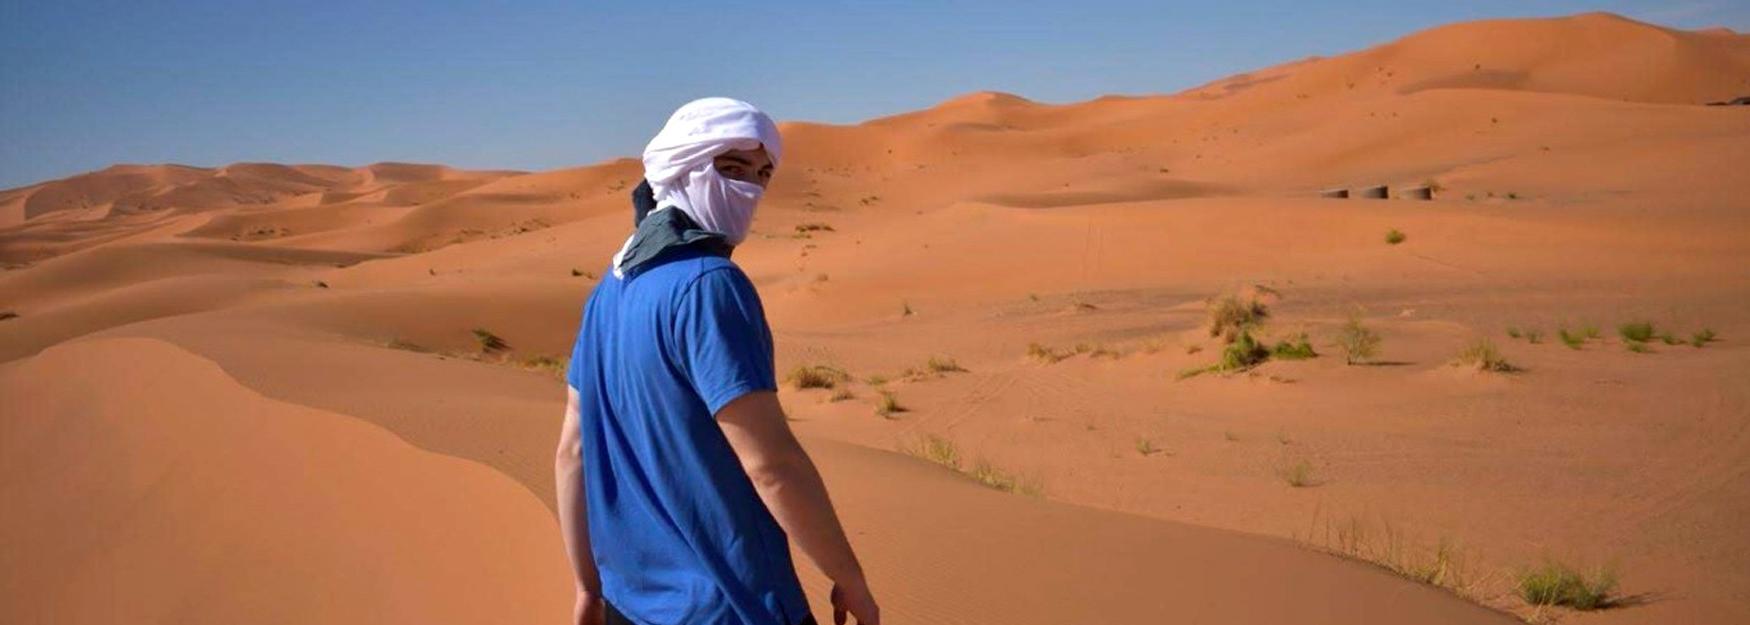 Devin Jozokos站在撒哈拉沙漠中，回头看着镜头